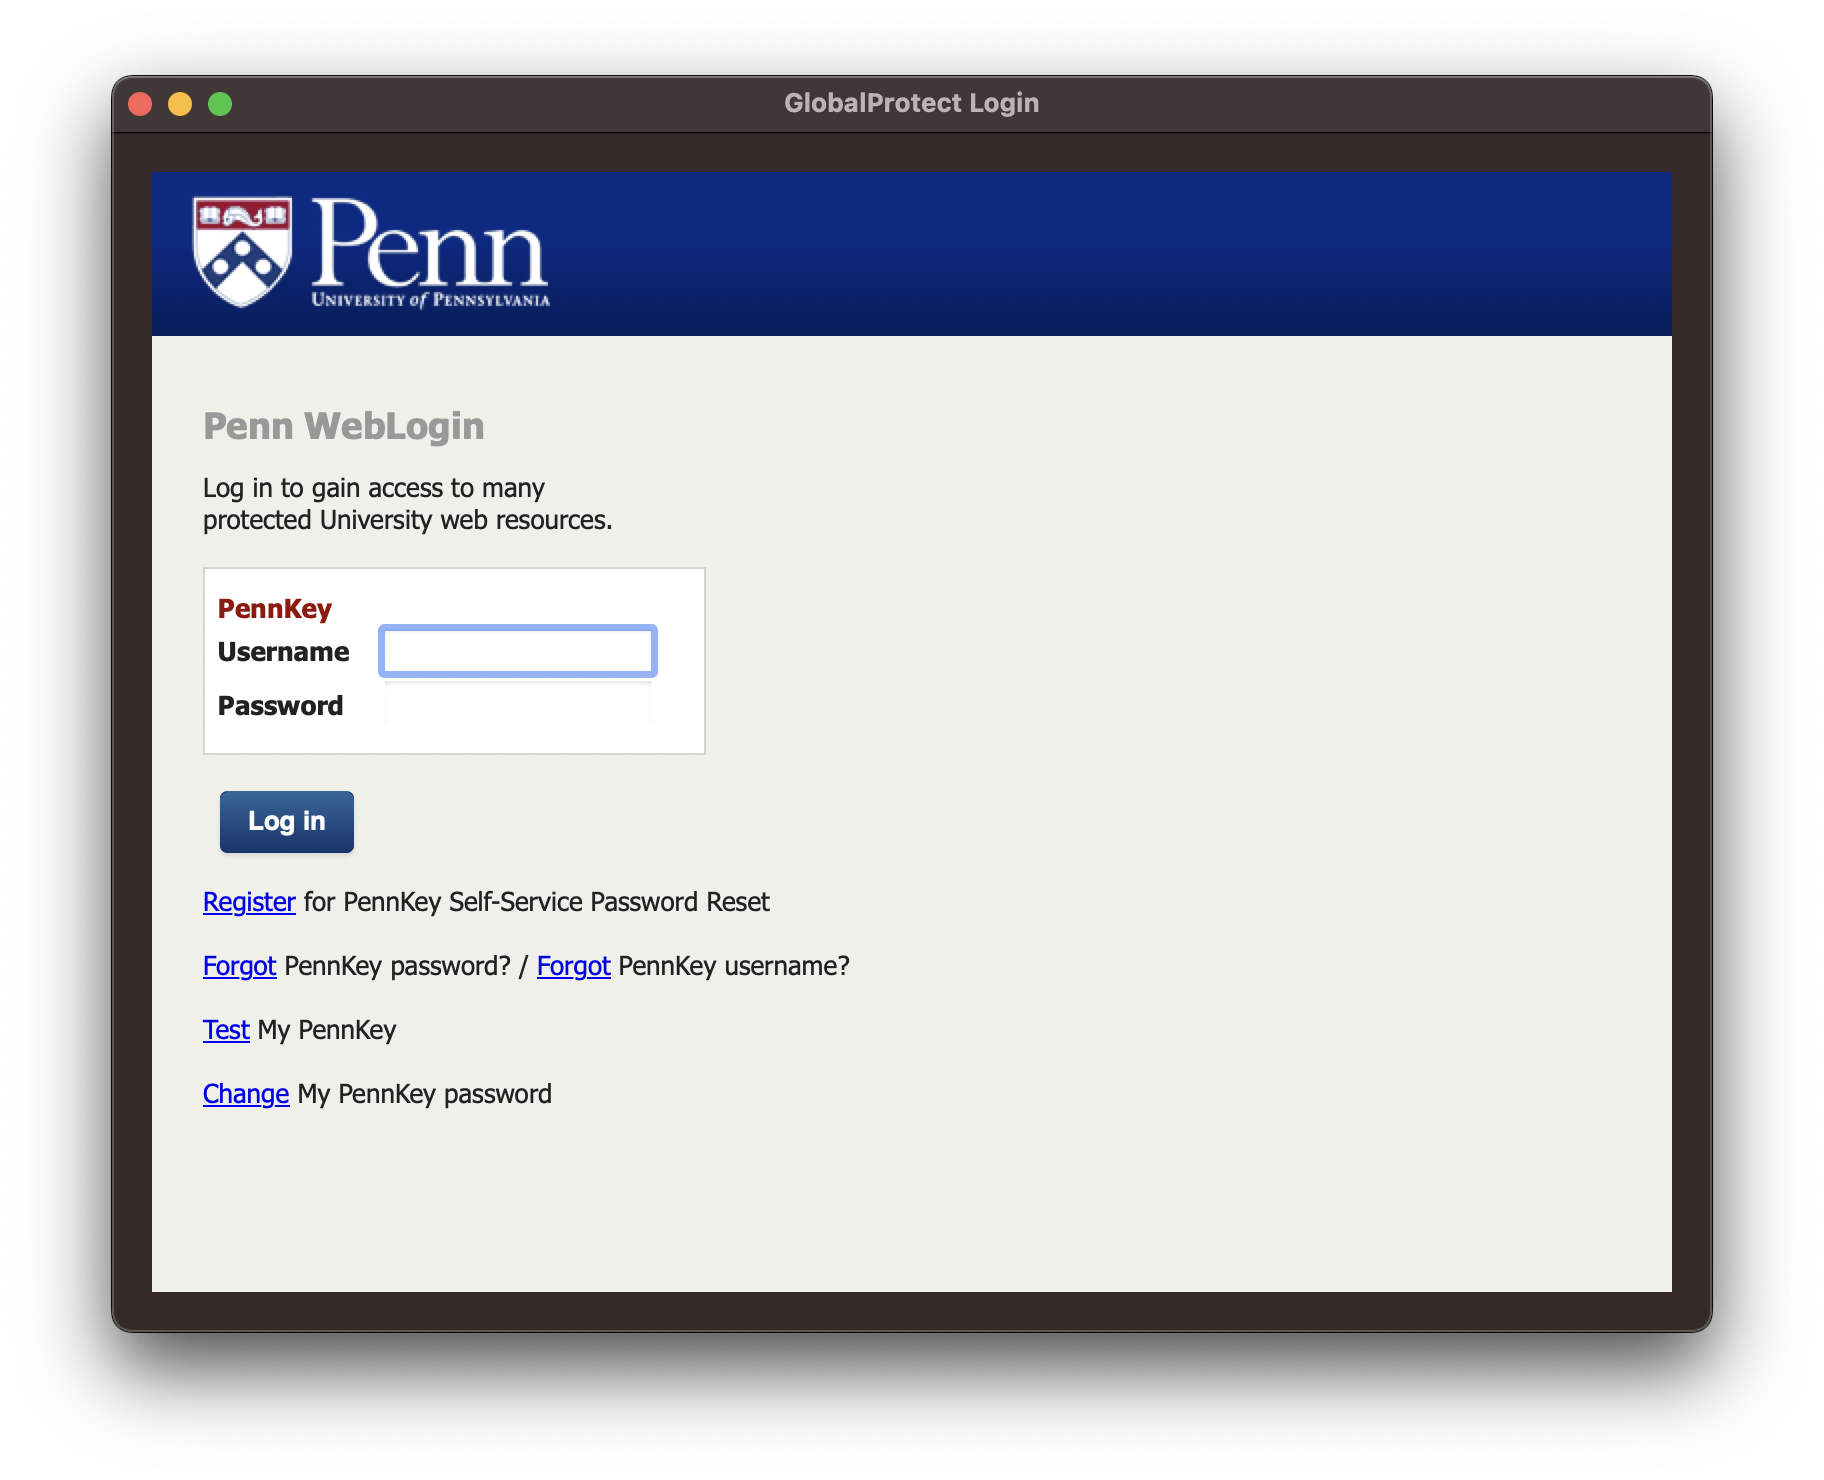 Penn WebLogin window prompts for Pennkey signin